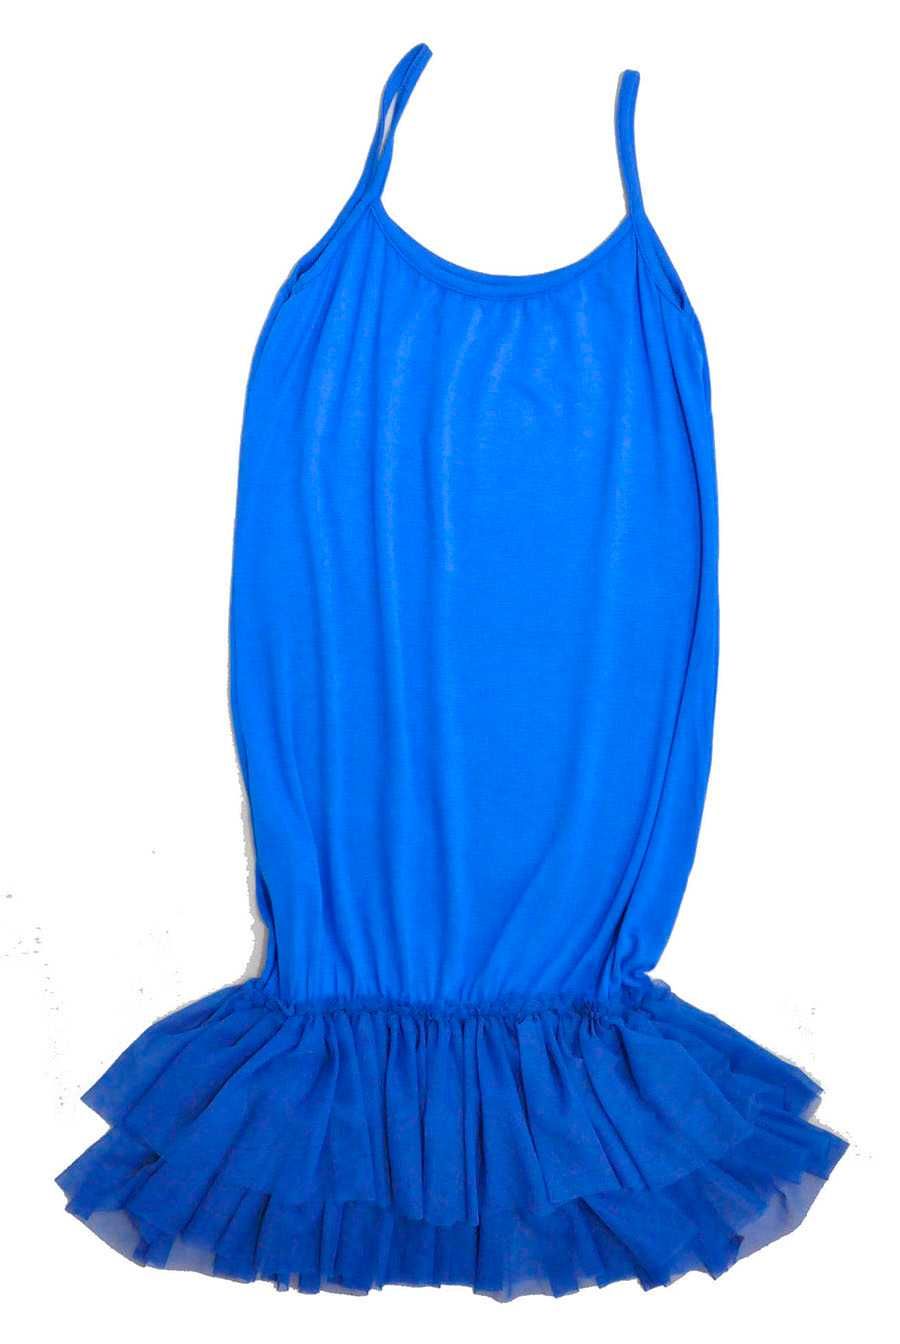 Halka-moda italy-pod sukienkę ,tunikę -S/M/L-Lux